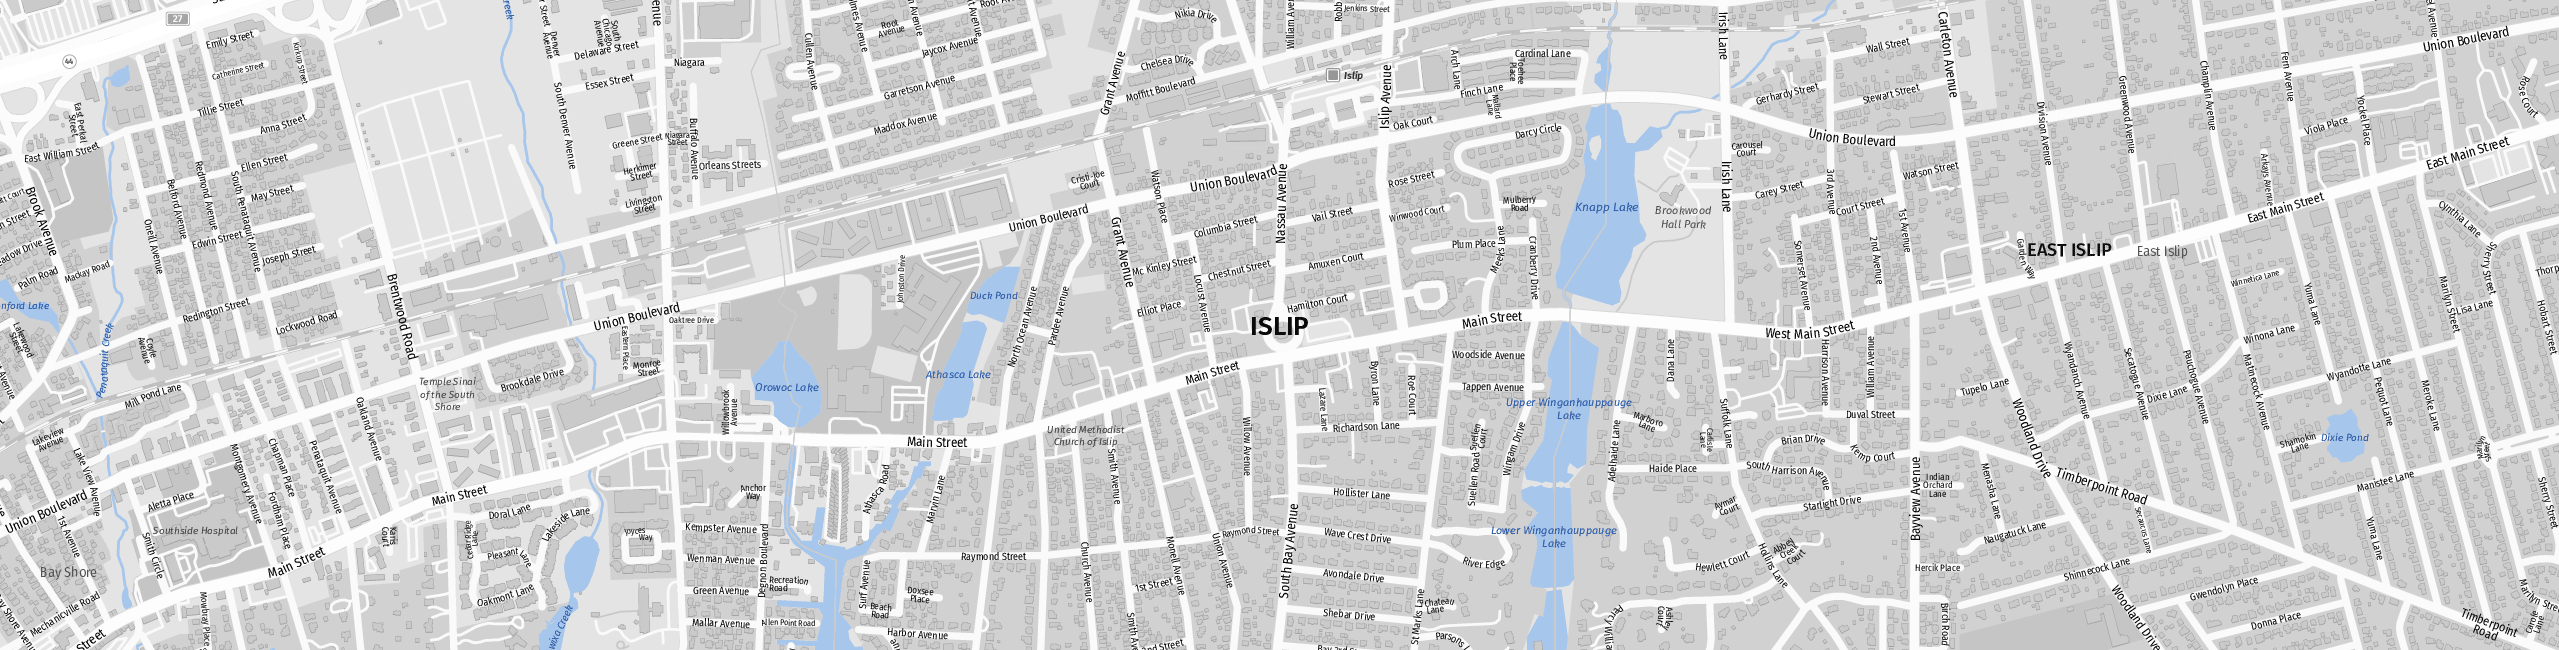 Stadtplan Islip zum Downloaden.